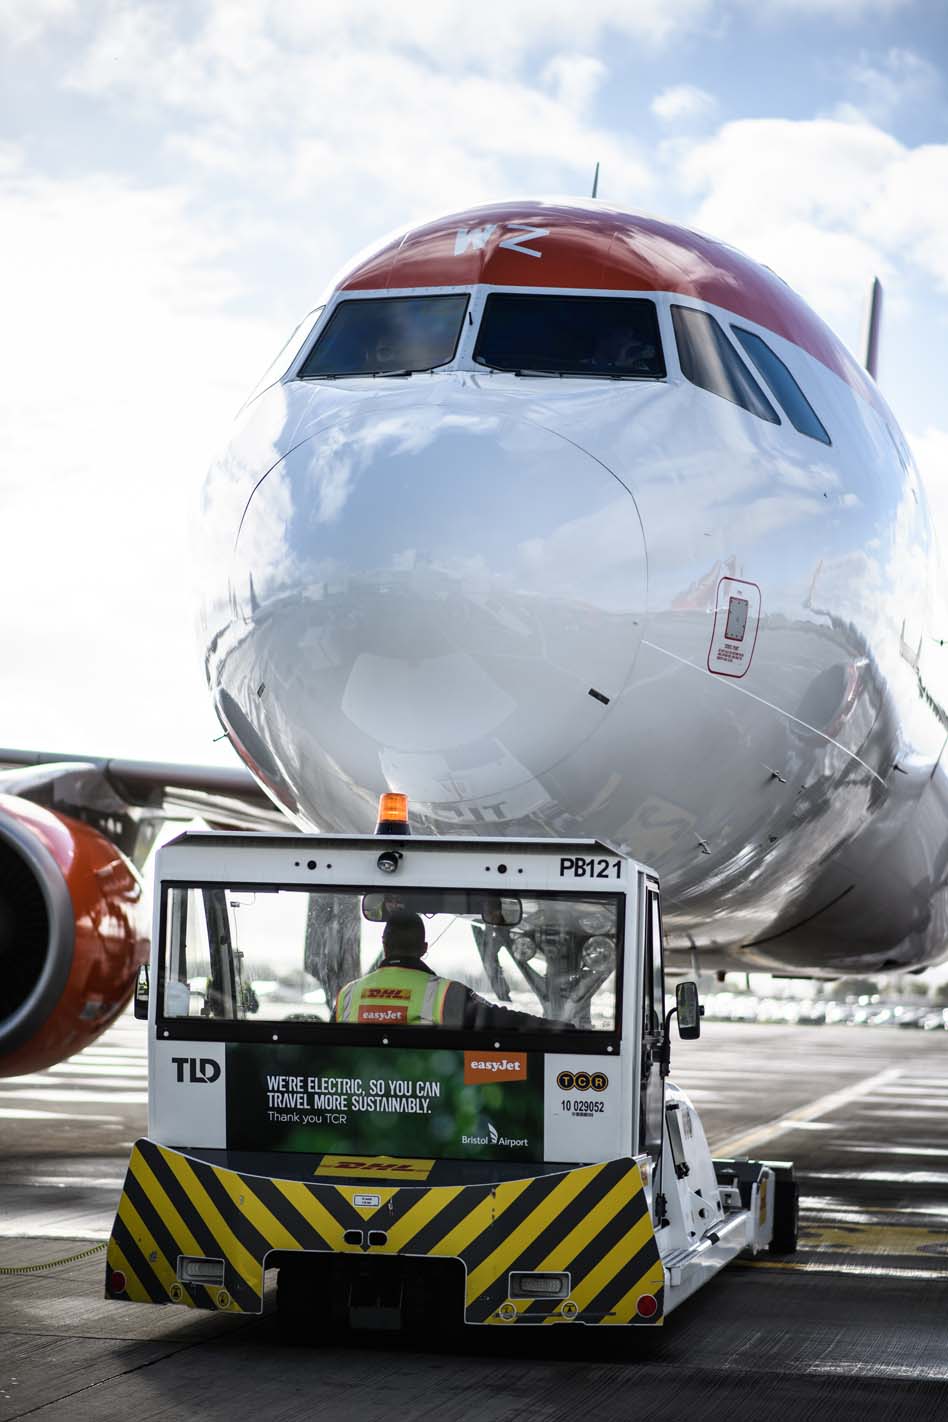 אמצעים חשמליים למתן שירותי קרקע למטוסים בנמל התעופה של בריסטול. צילום יח"צ